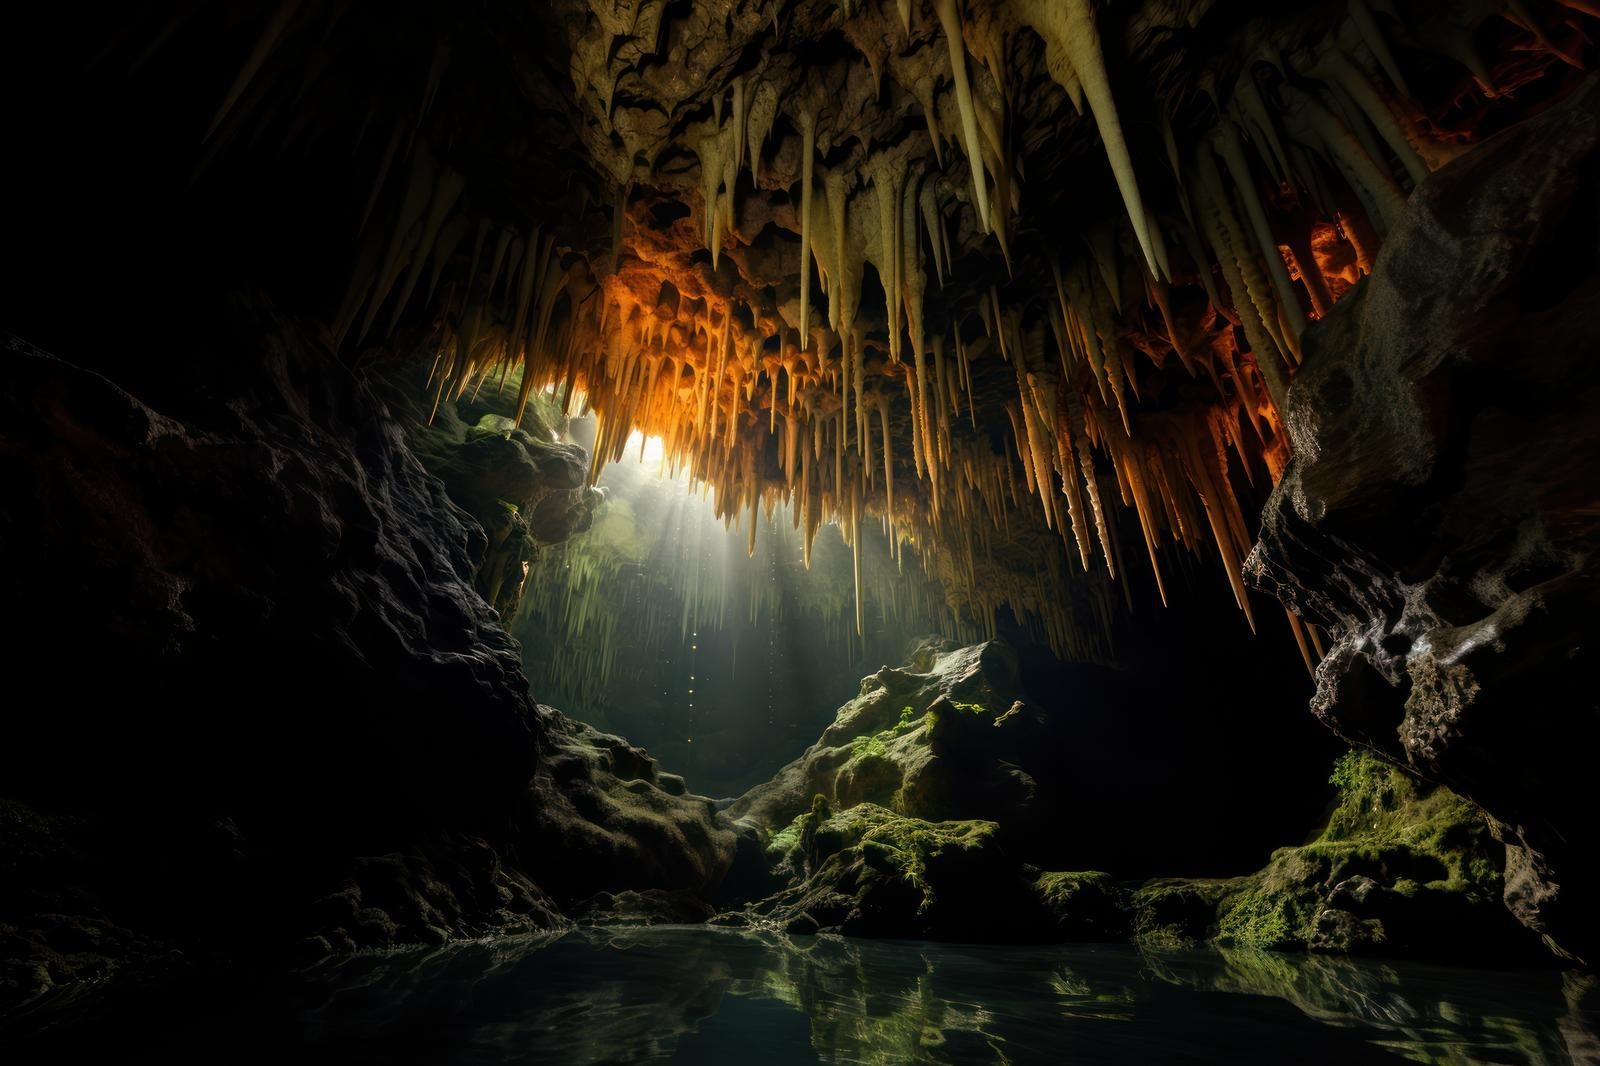 「地下世界の水源と鍾乳洞の風景写真ギャラリー」の写真